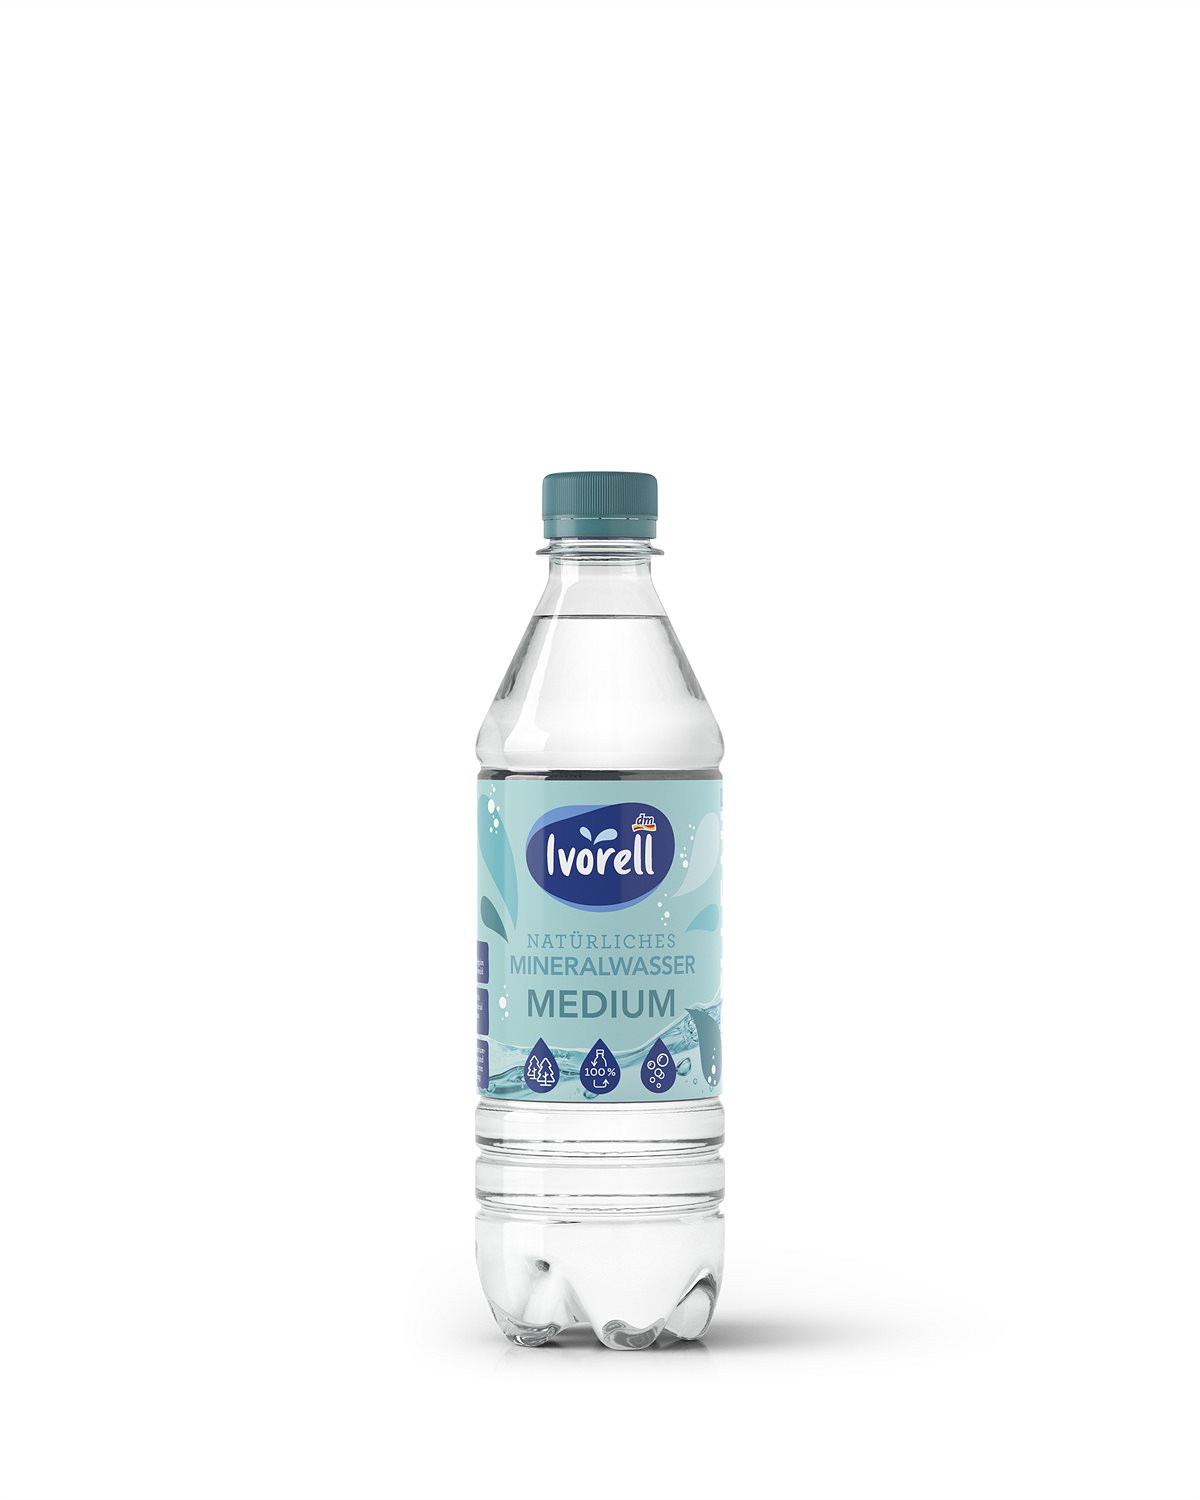 Natürliches Mineralwasser Medium, 500 ml 0,45 Euro